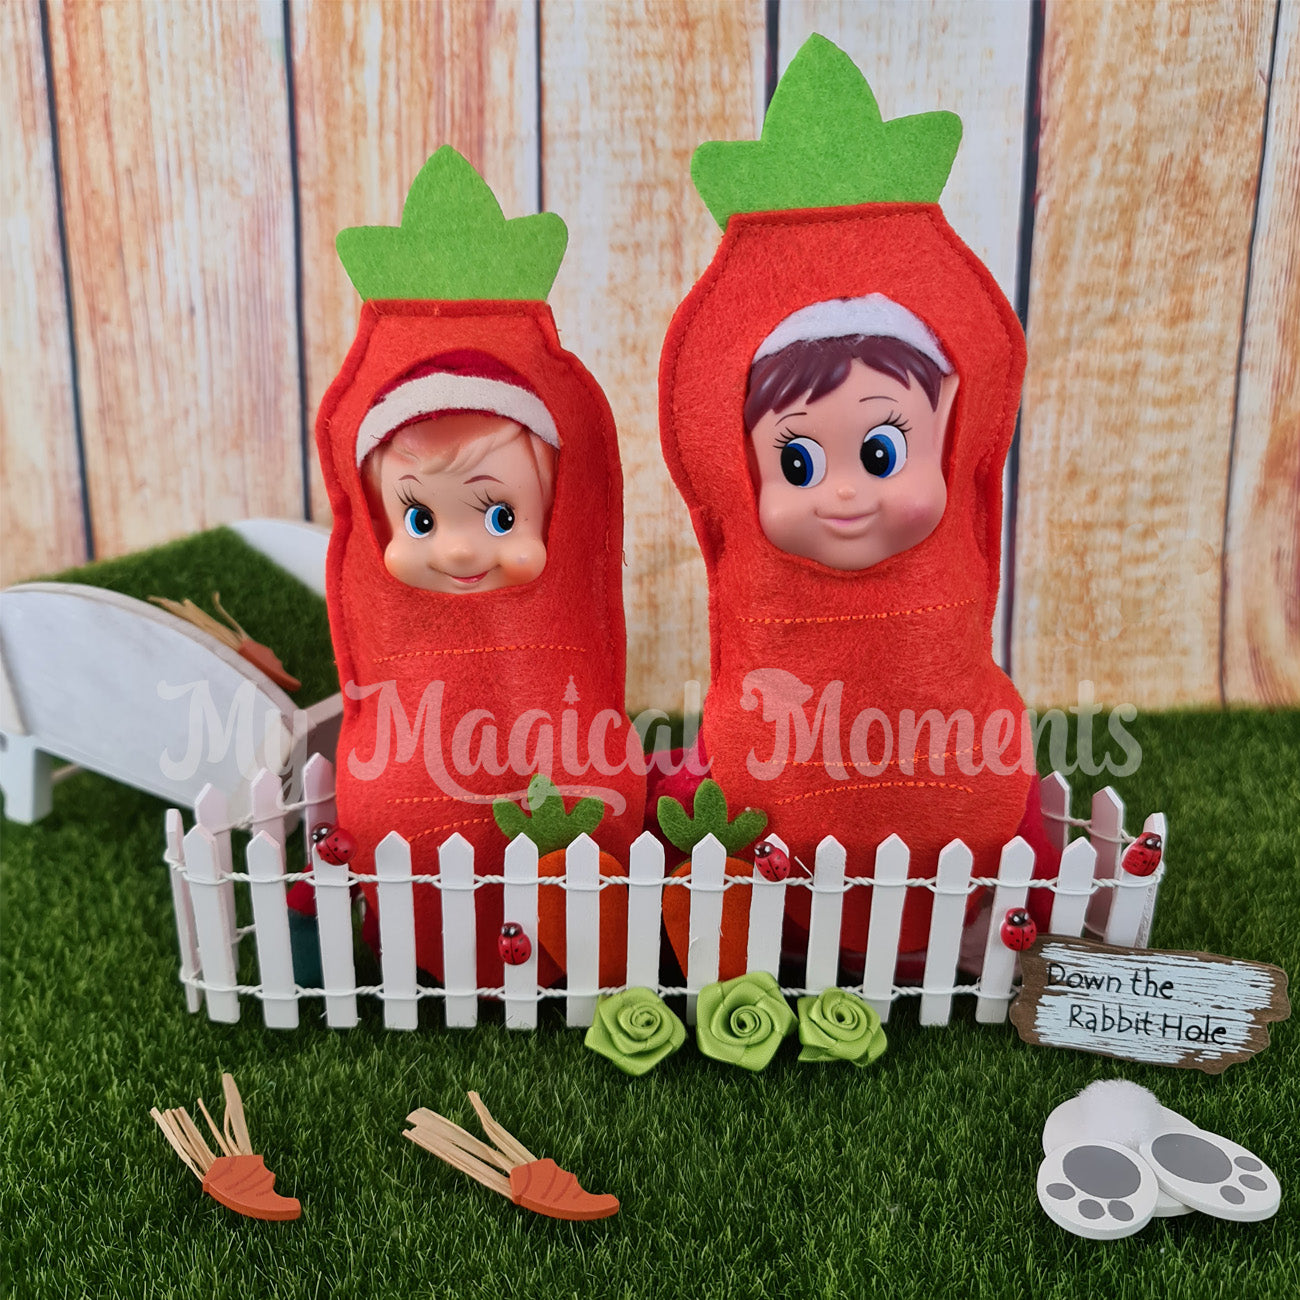 elves dressed as carrots with a wheelbarrow